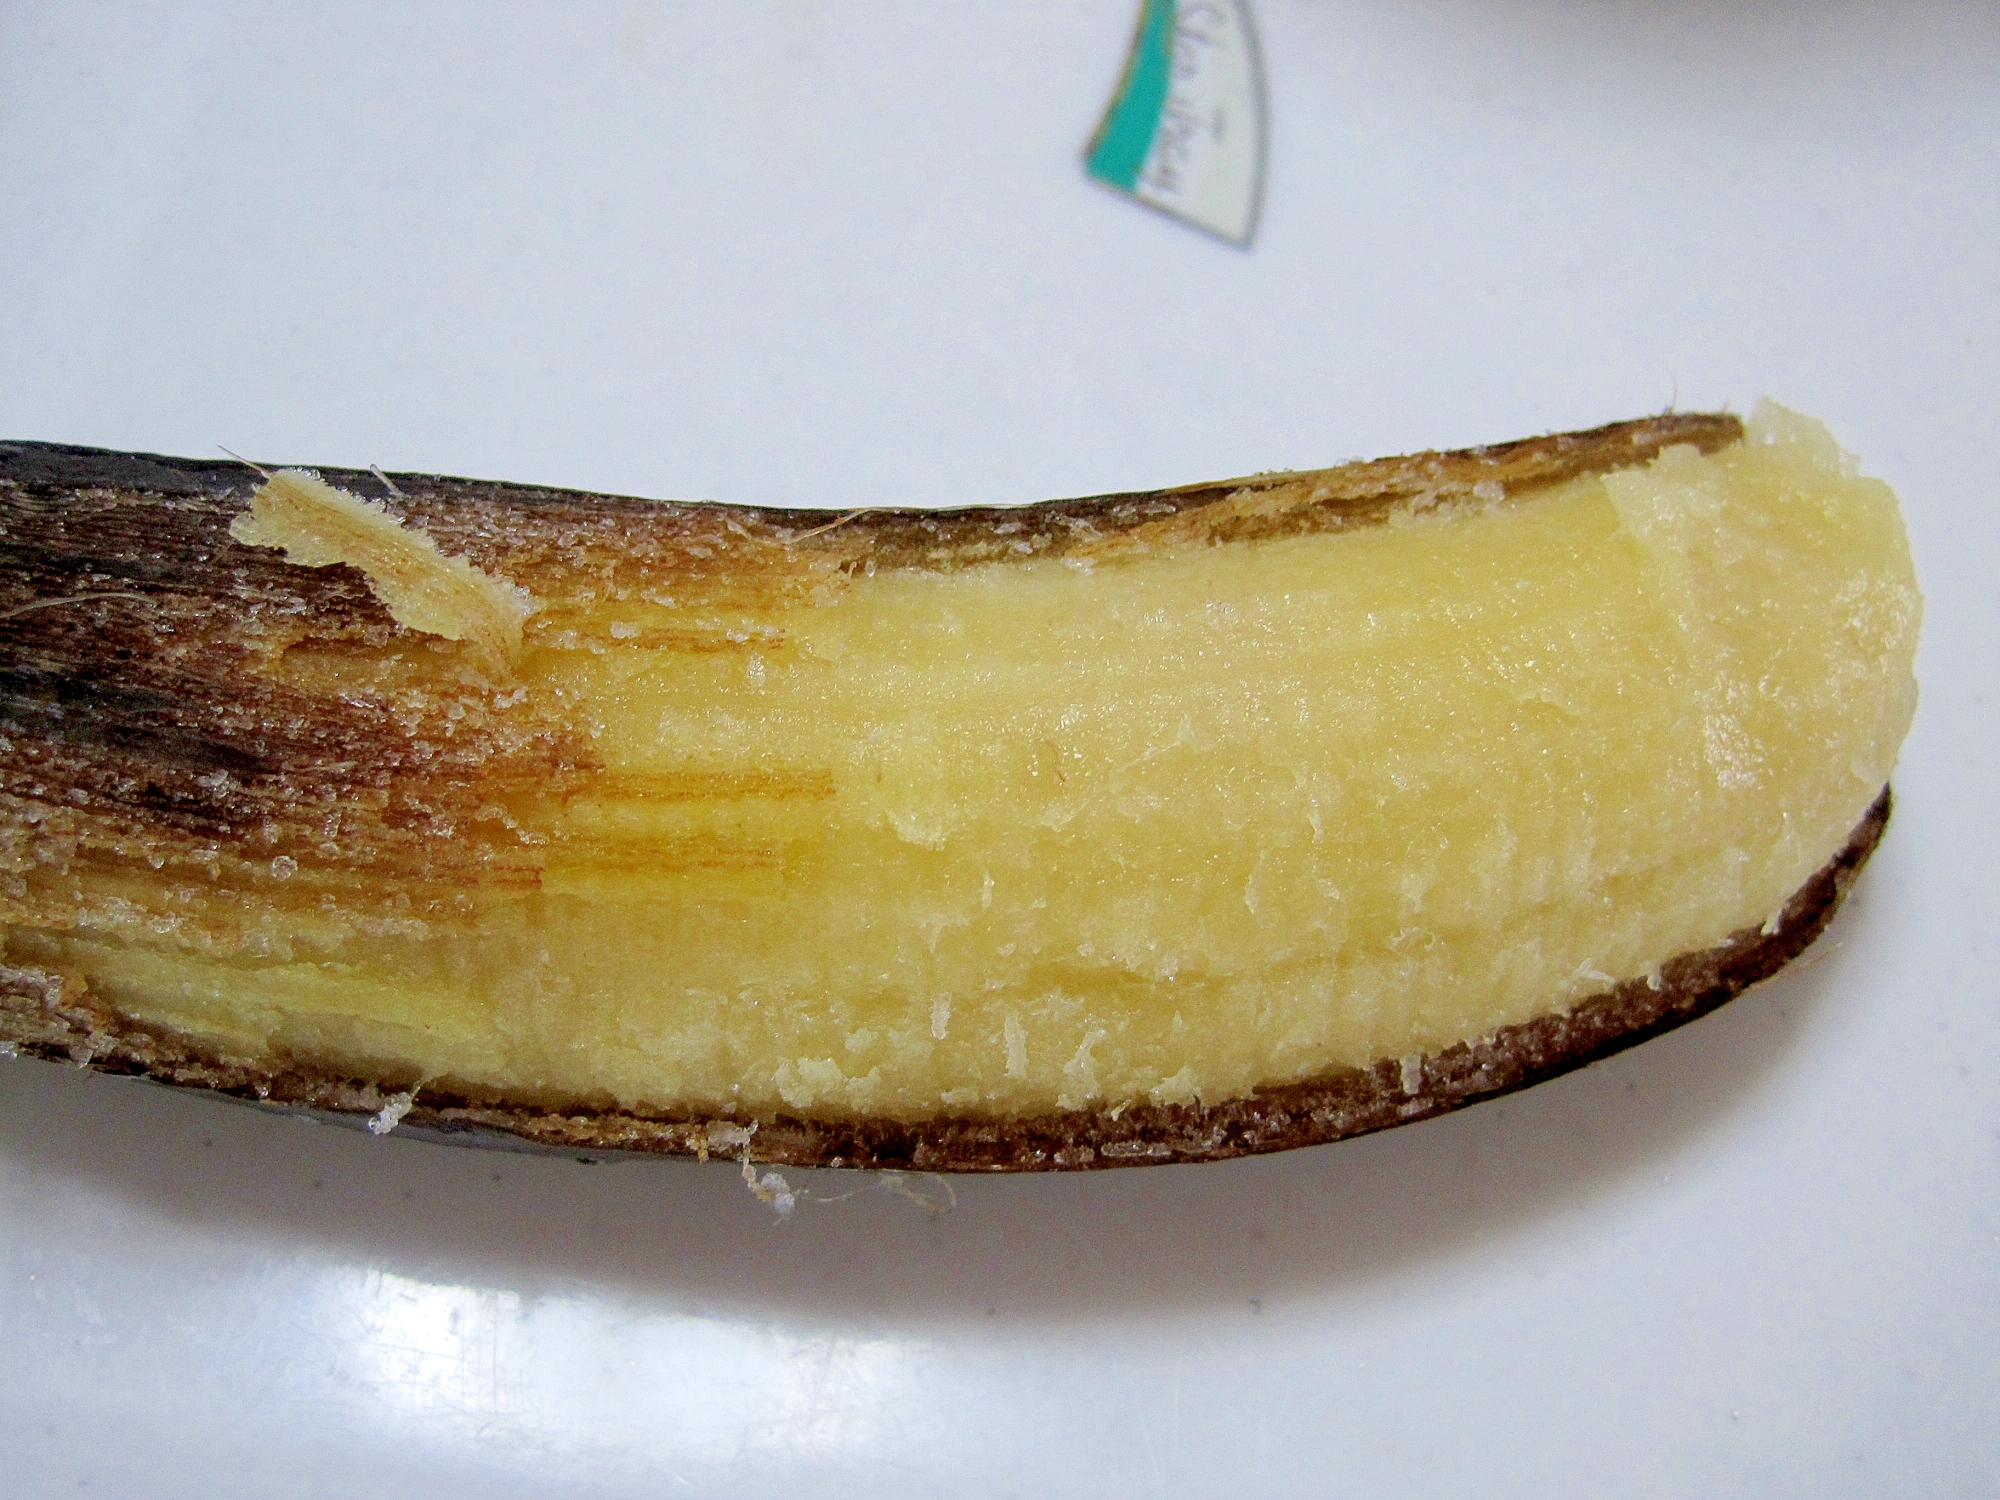 変色しないバナナの冷凍方法